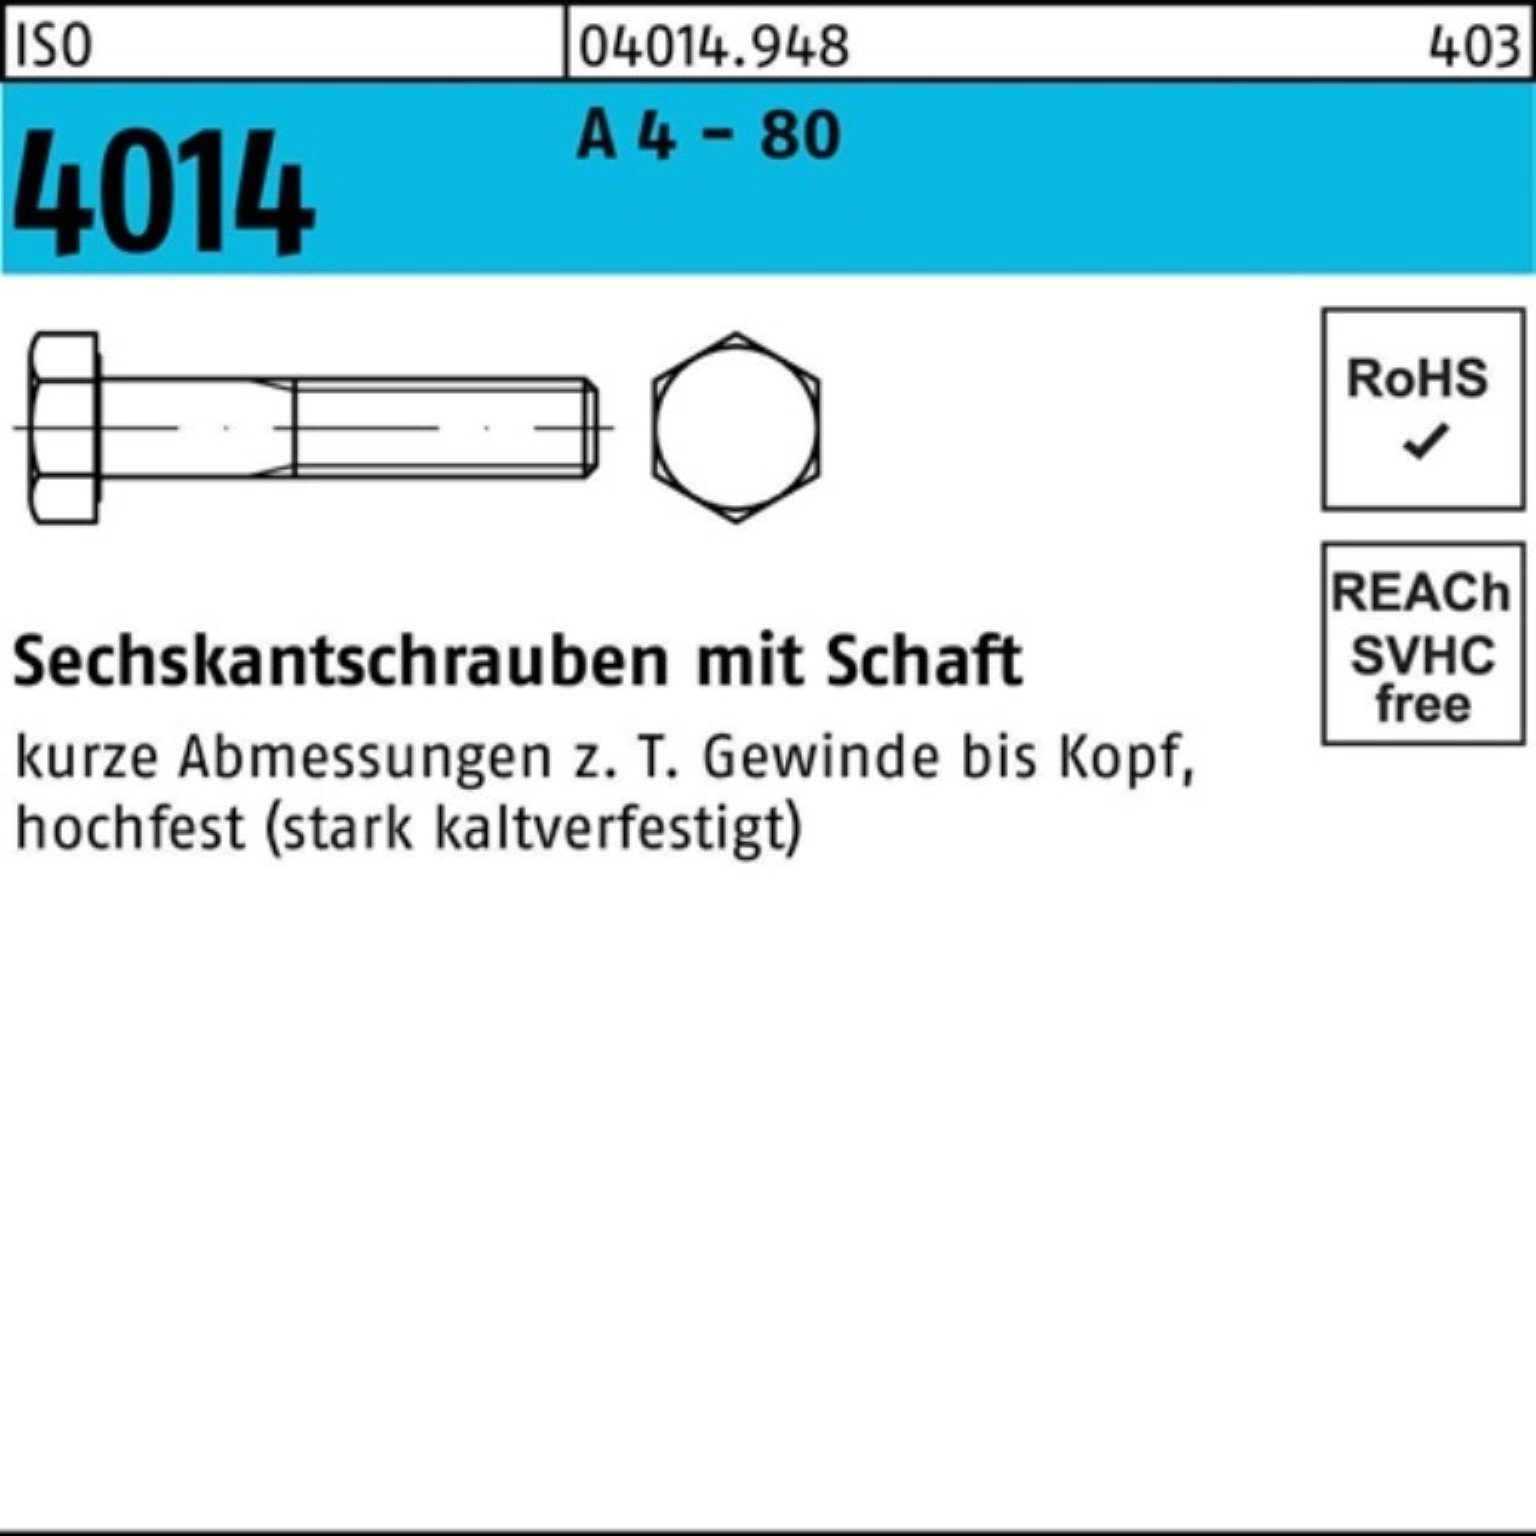 Sechskantschraube Reyher Pack 4014 Stüc - Schaft 100er 4 Sechskantschraube 50 80 A 55 M14x ISO